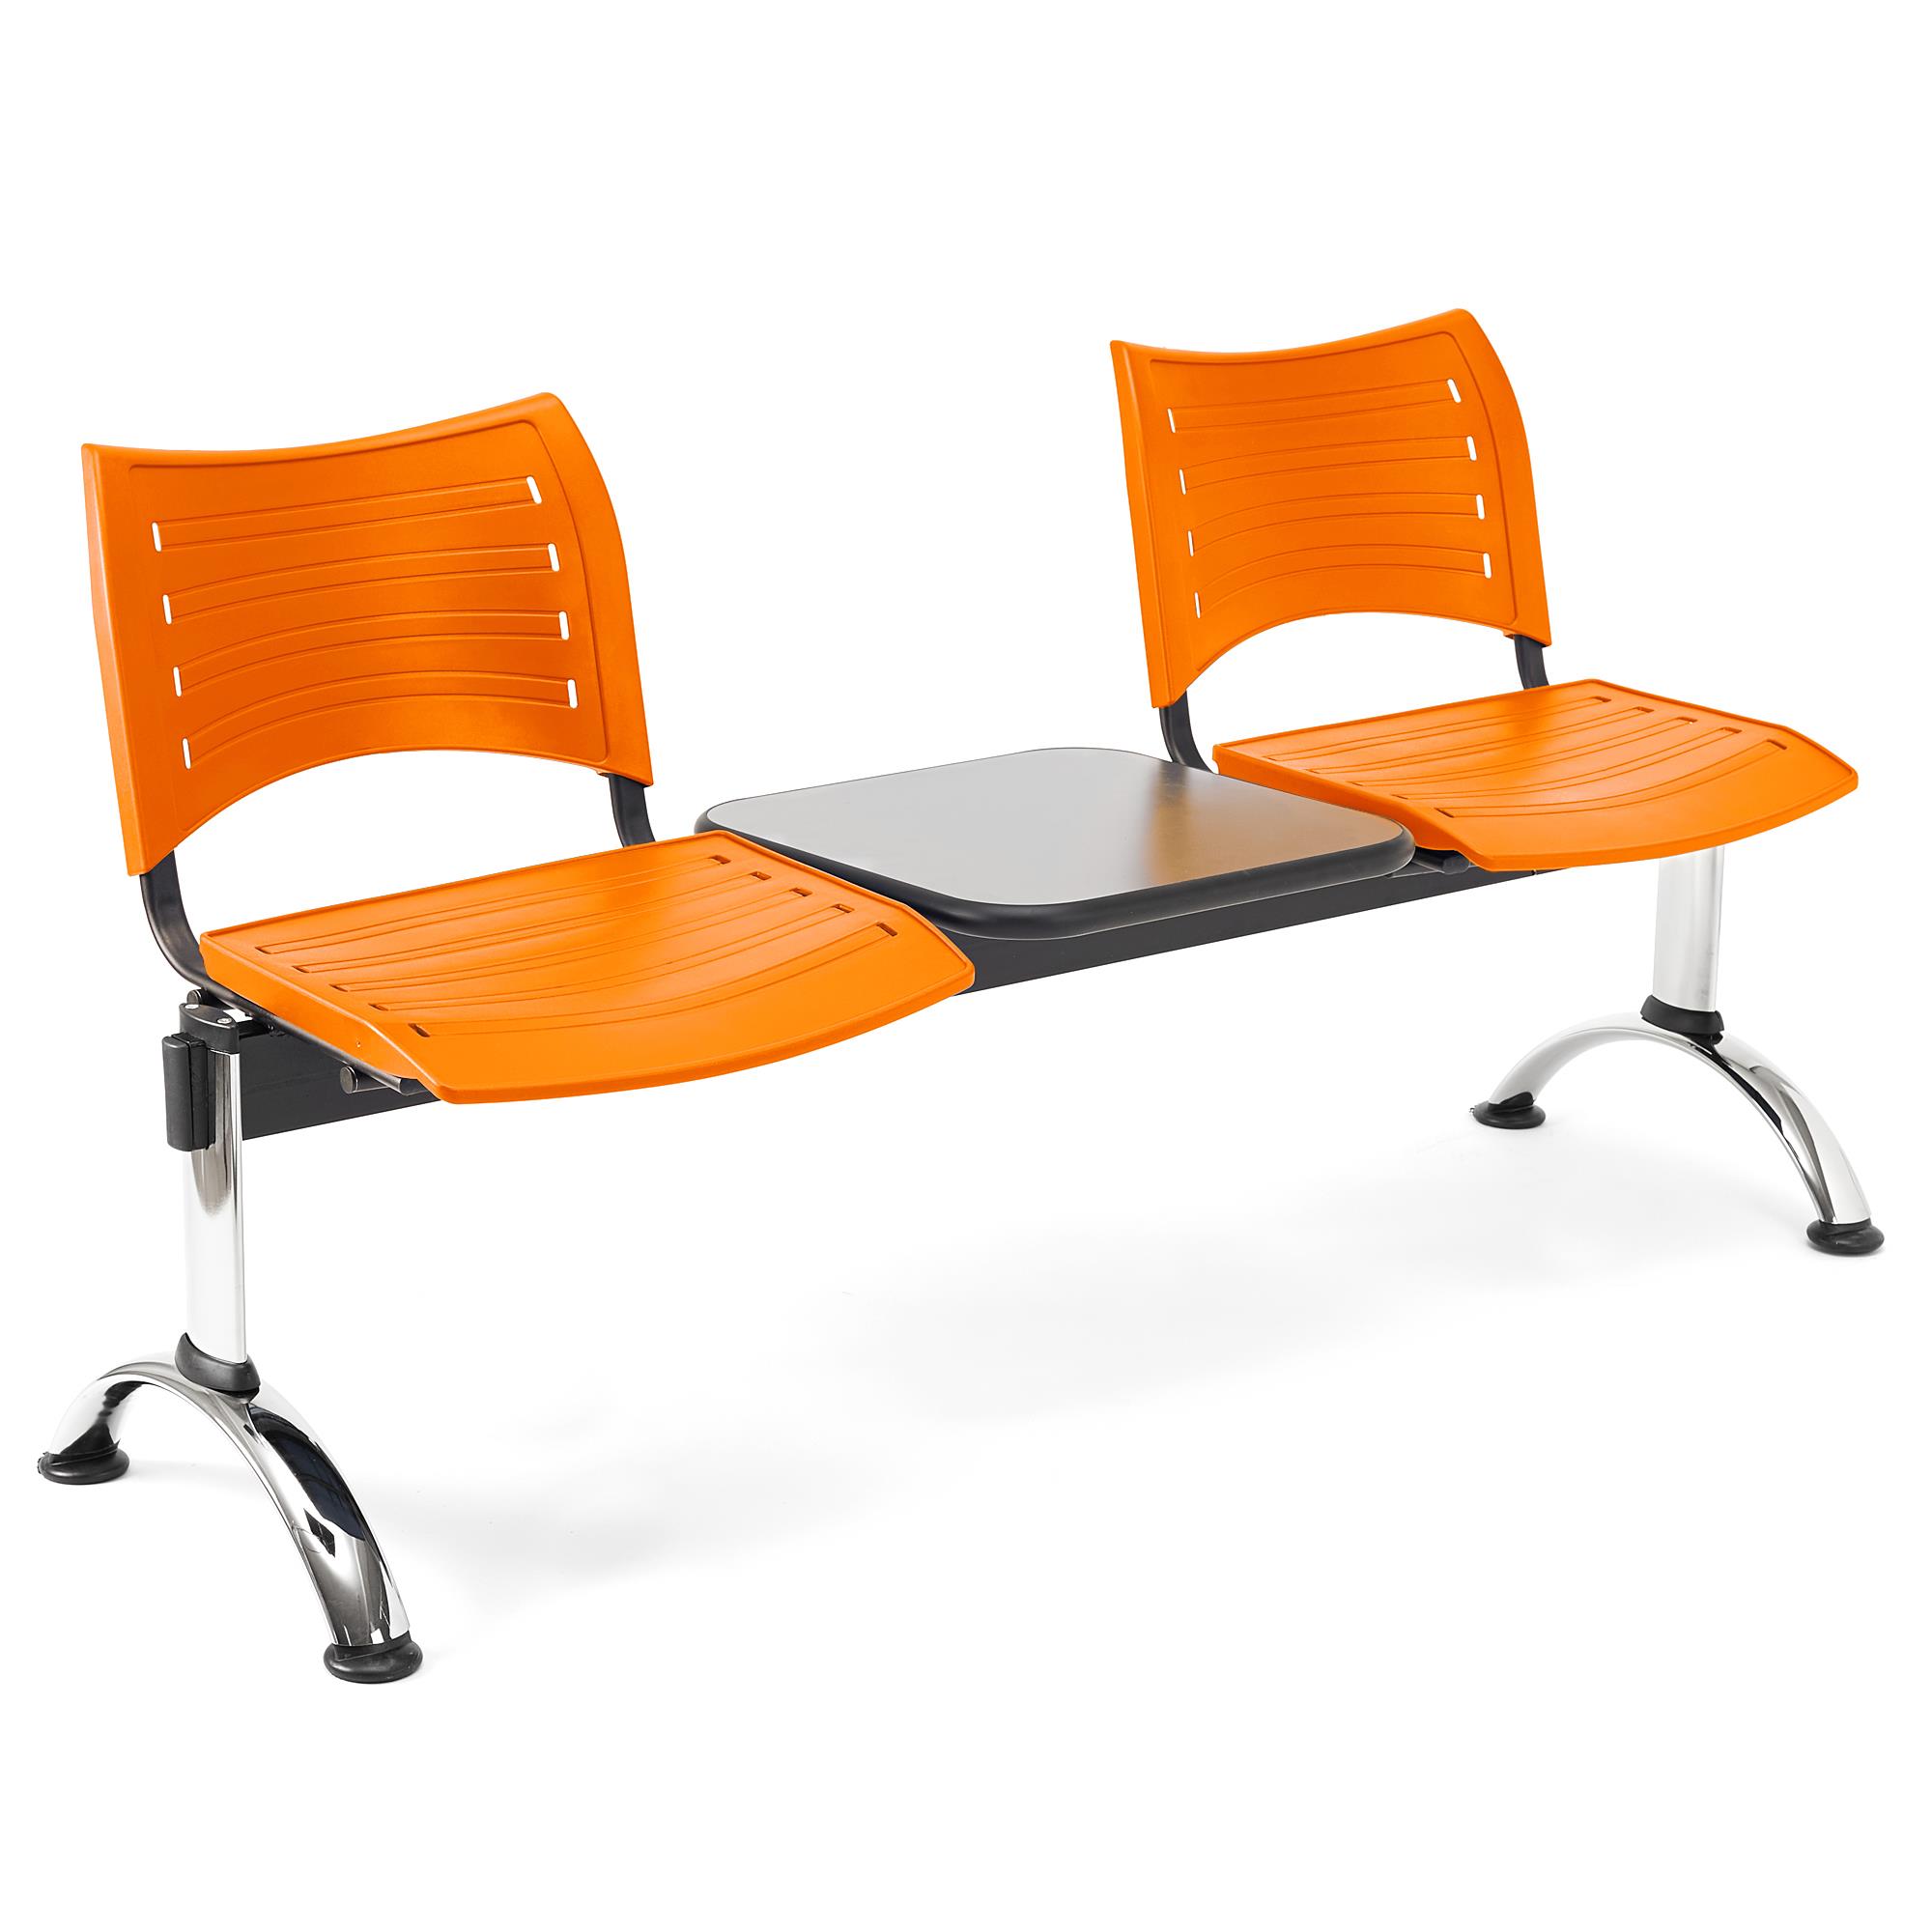 Wartebank ELVA 2-Sitzer mit Tisch, Metallgestell, Kunststoff, Farbe Orange